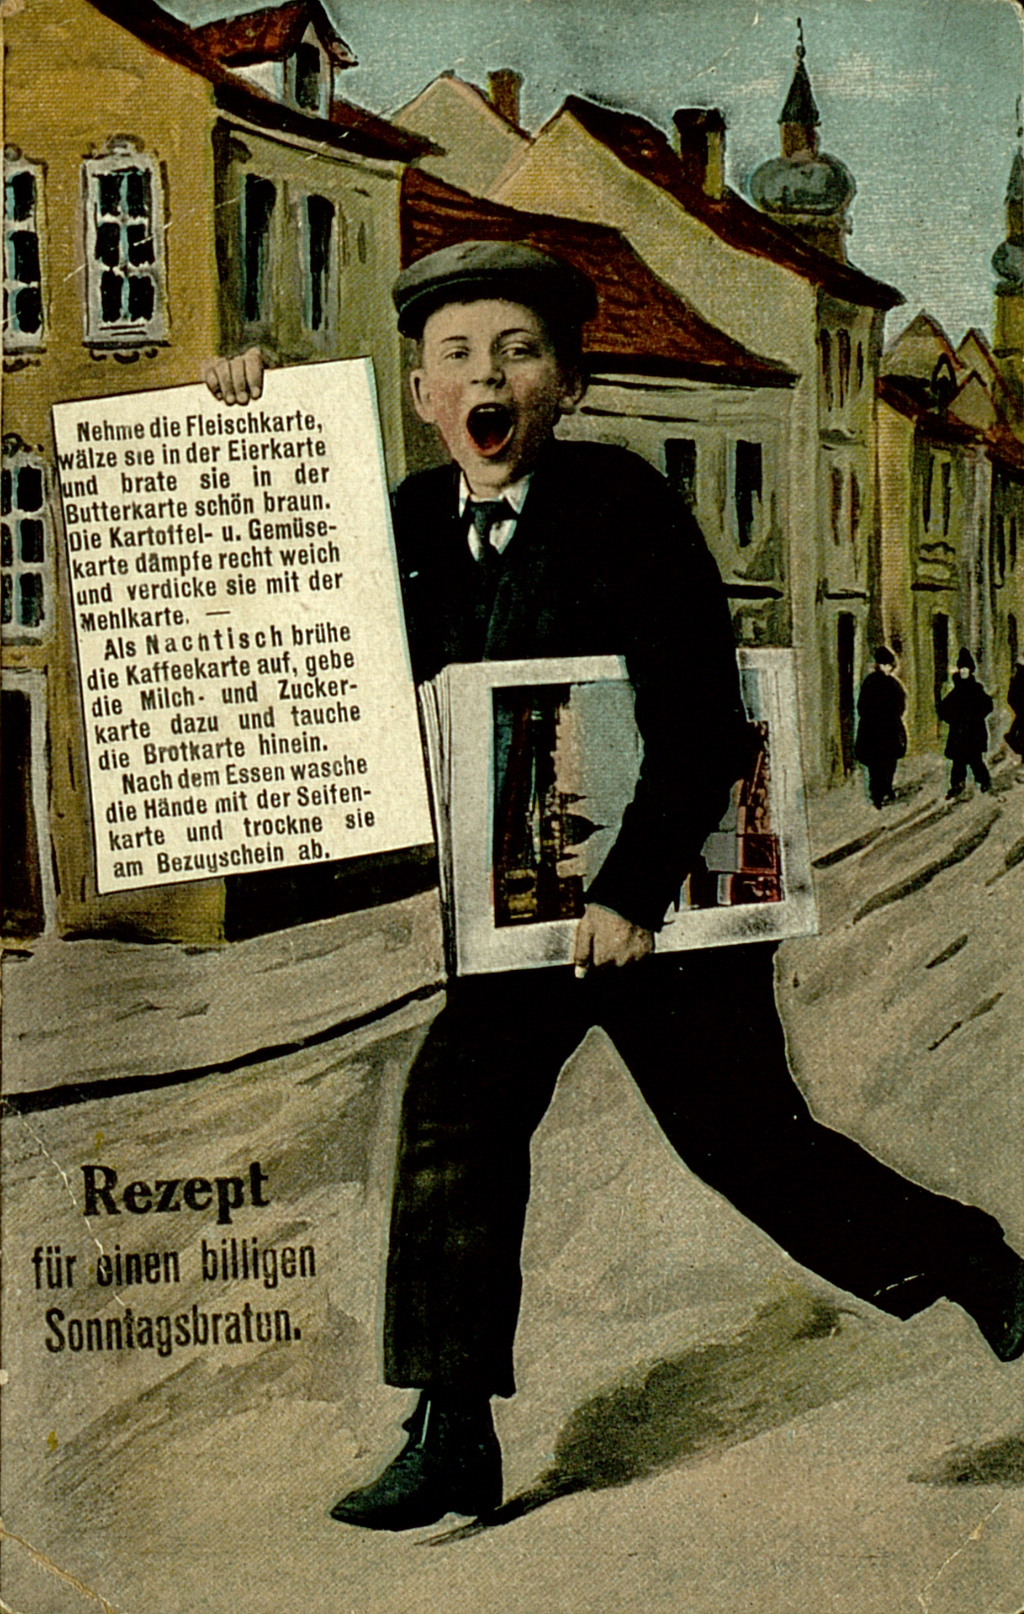 Propaganda-Postkarte mit einem Rezept für einen billigen Sonntagsbraten. Malerei eine Zeitungsjungen, das Rezept ist in die Zeitung in einer Hand eingefügt.